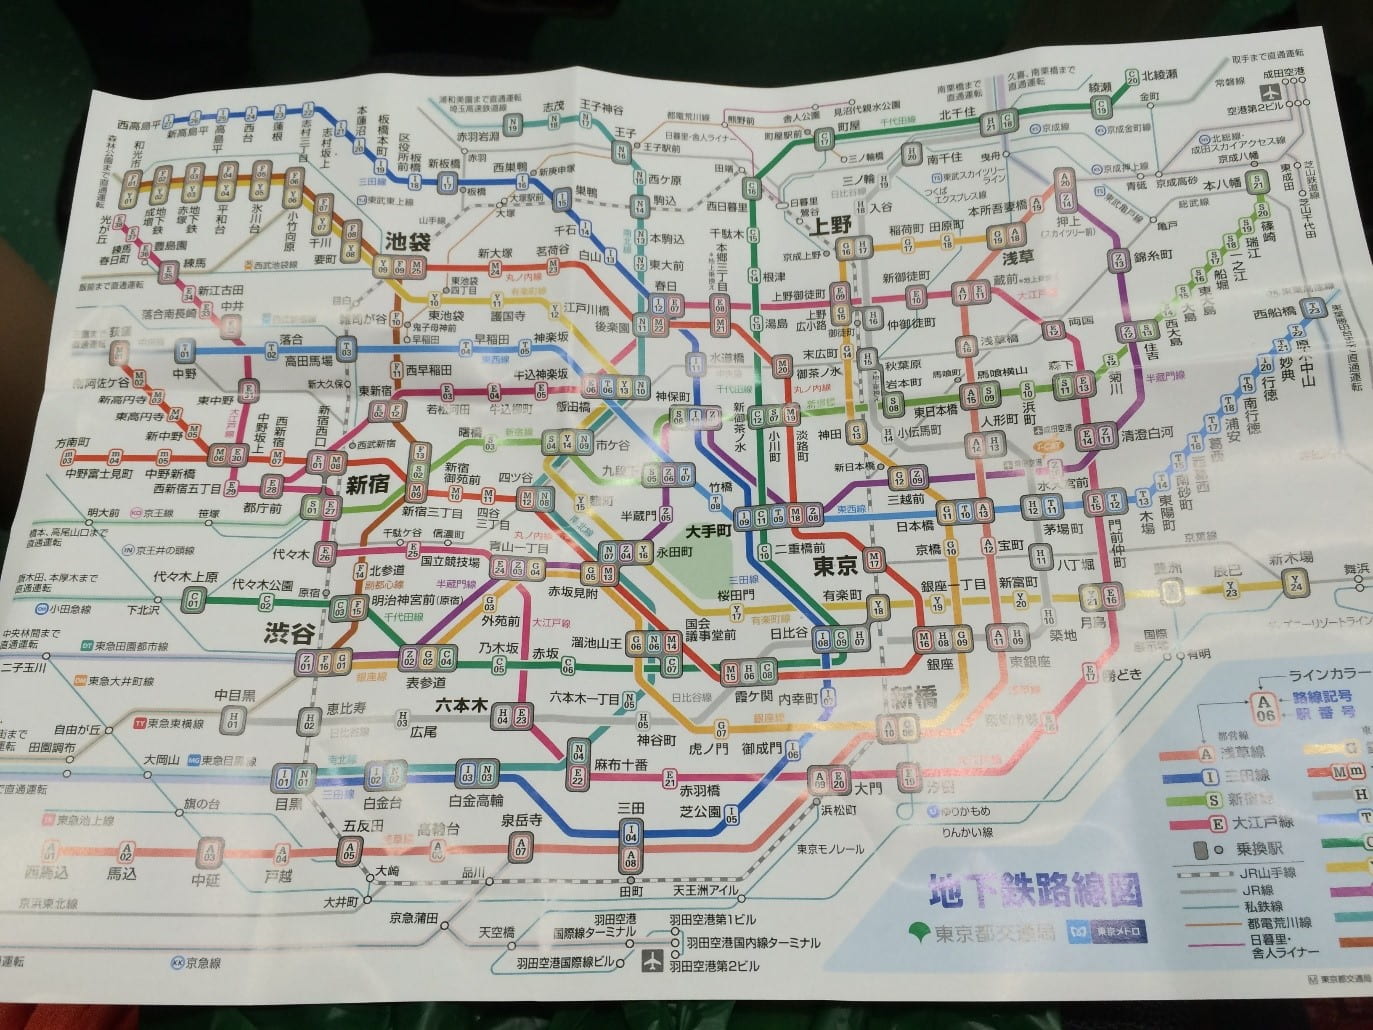 Transit map of Tokyo